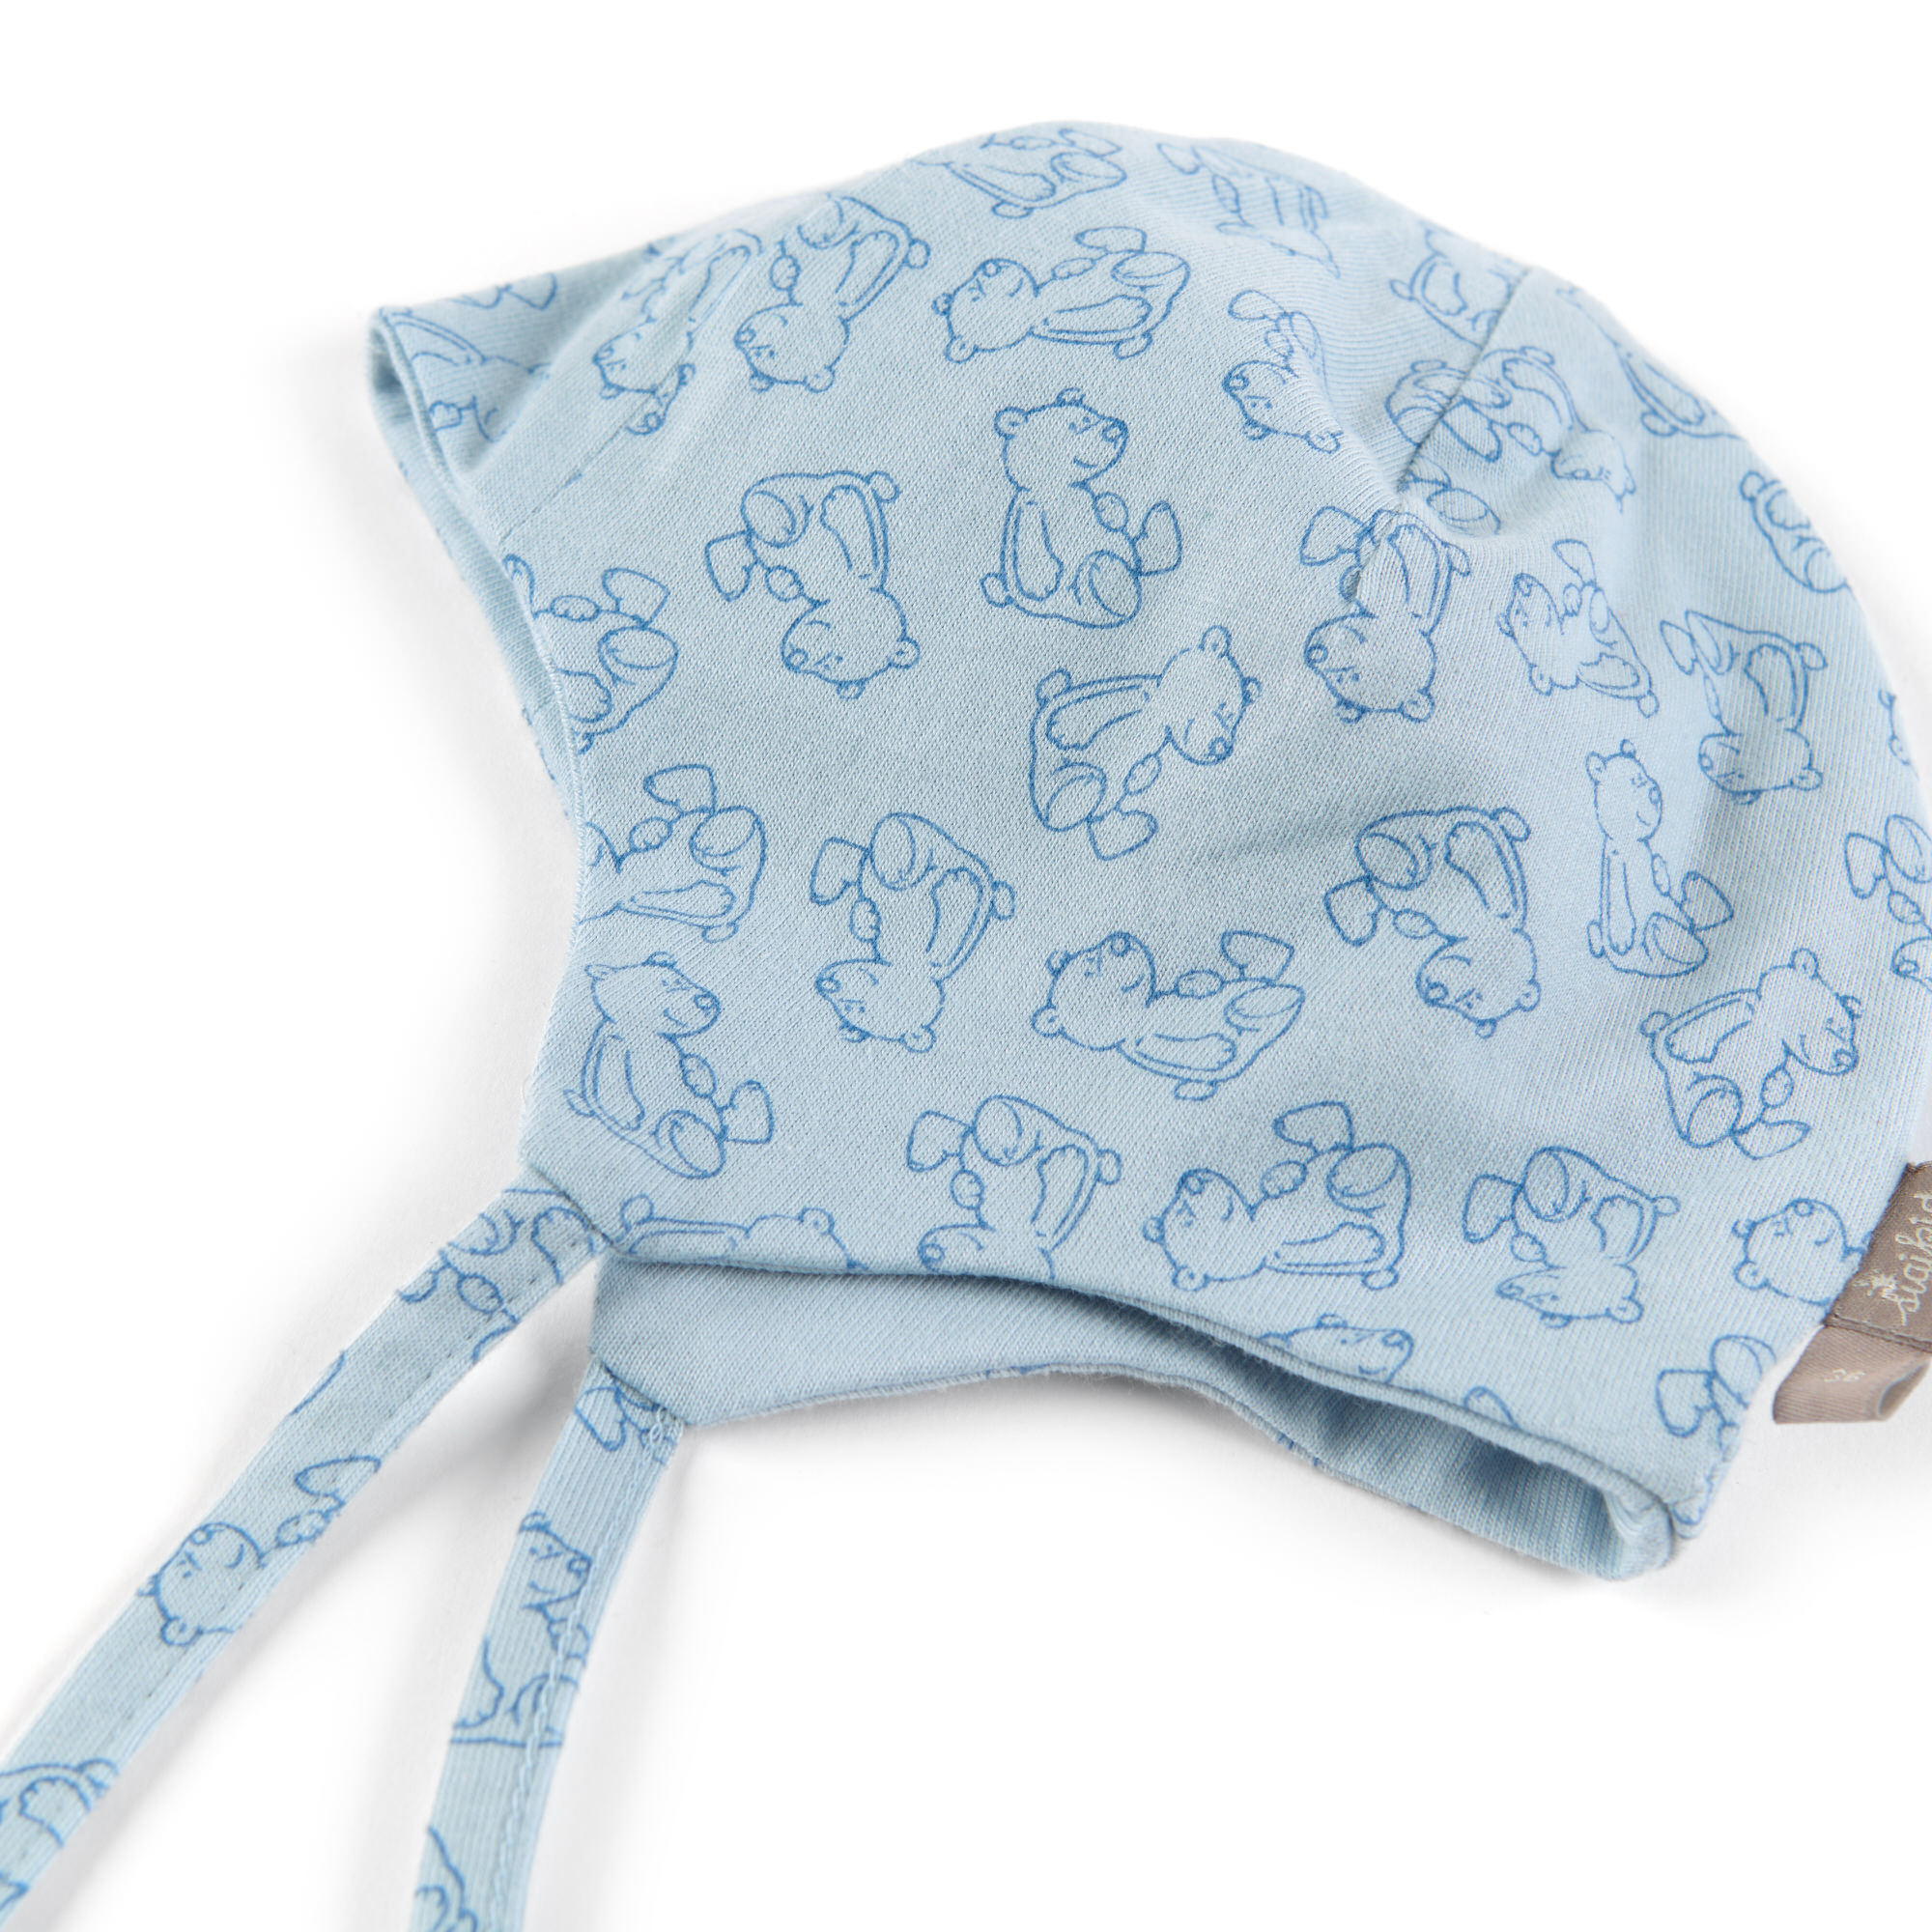 Hellblaue Babymütze mit Bärchen Print